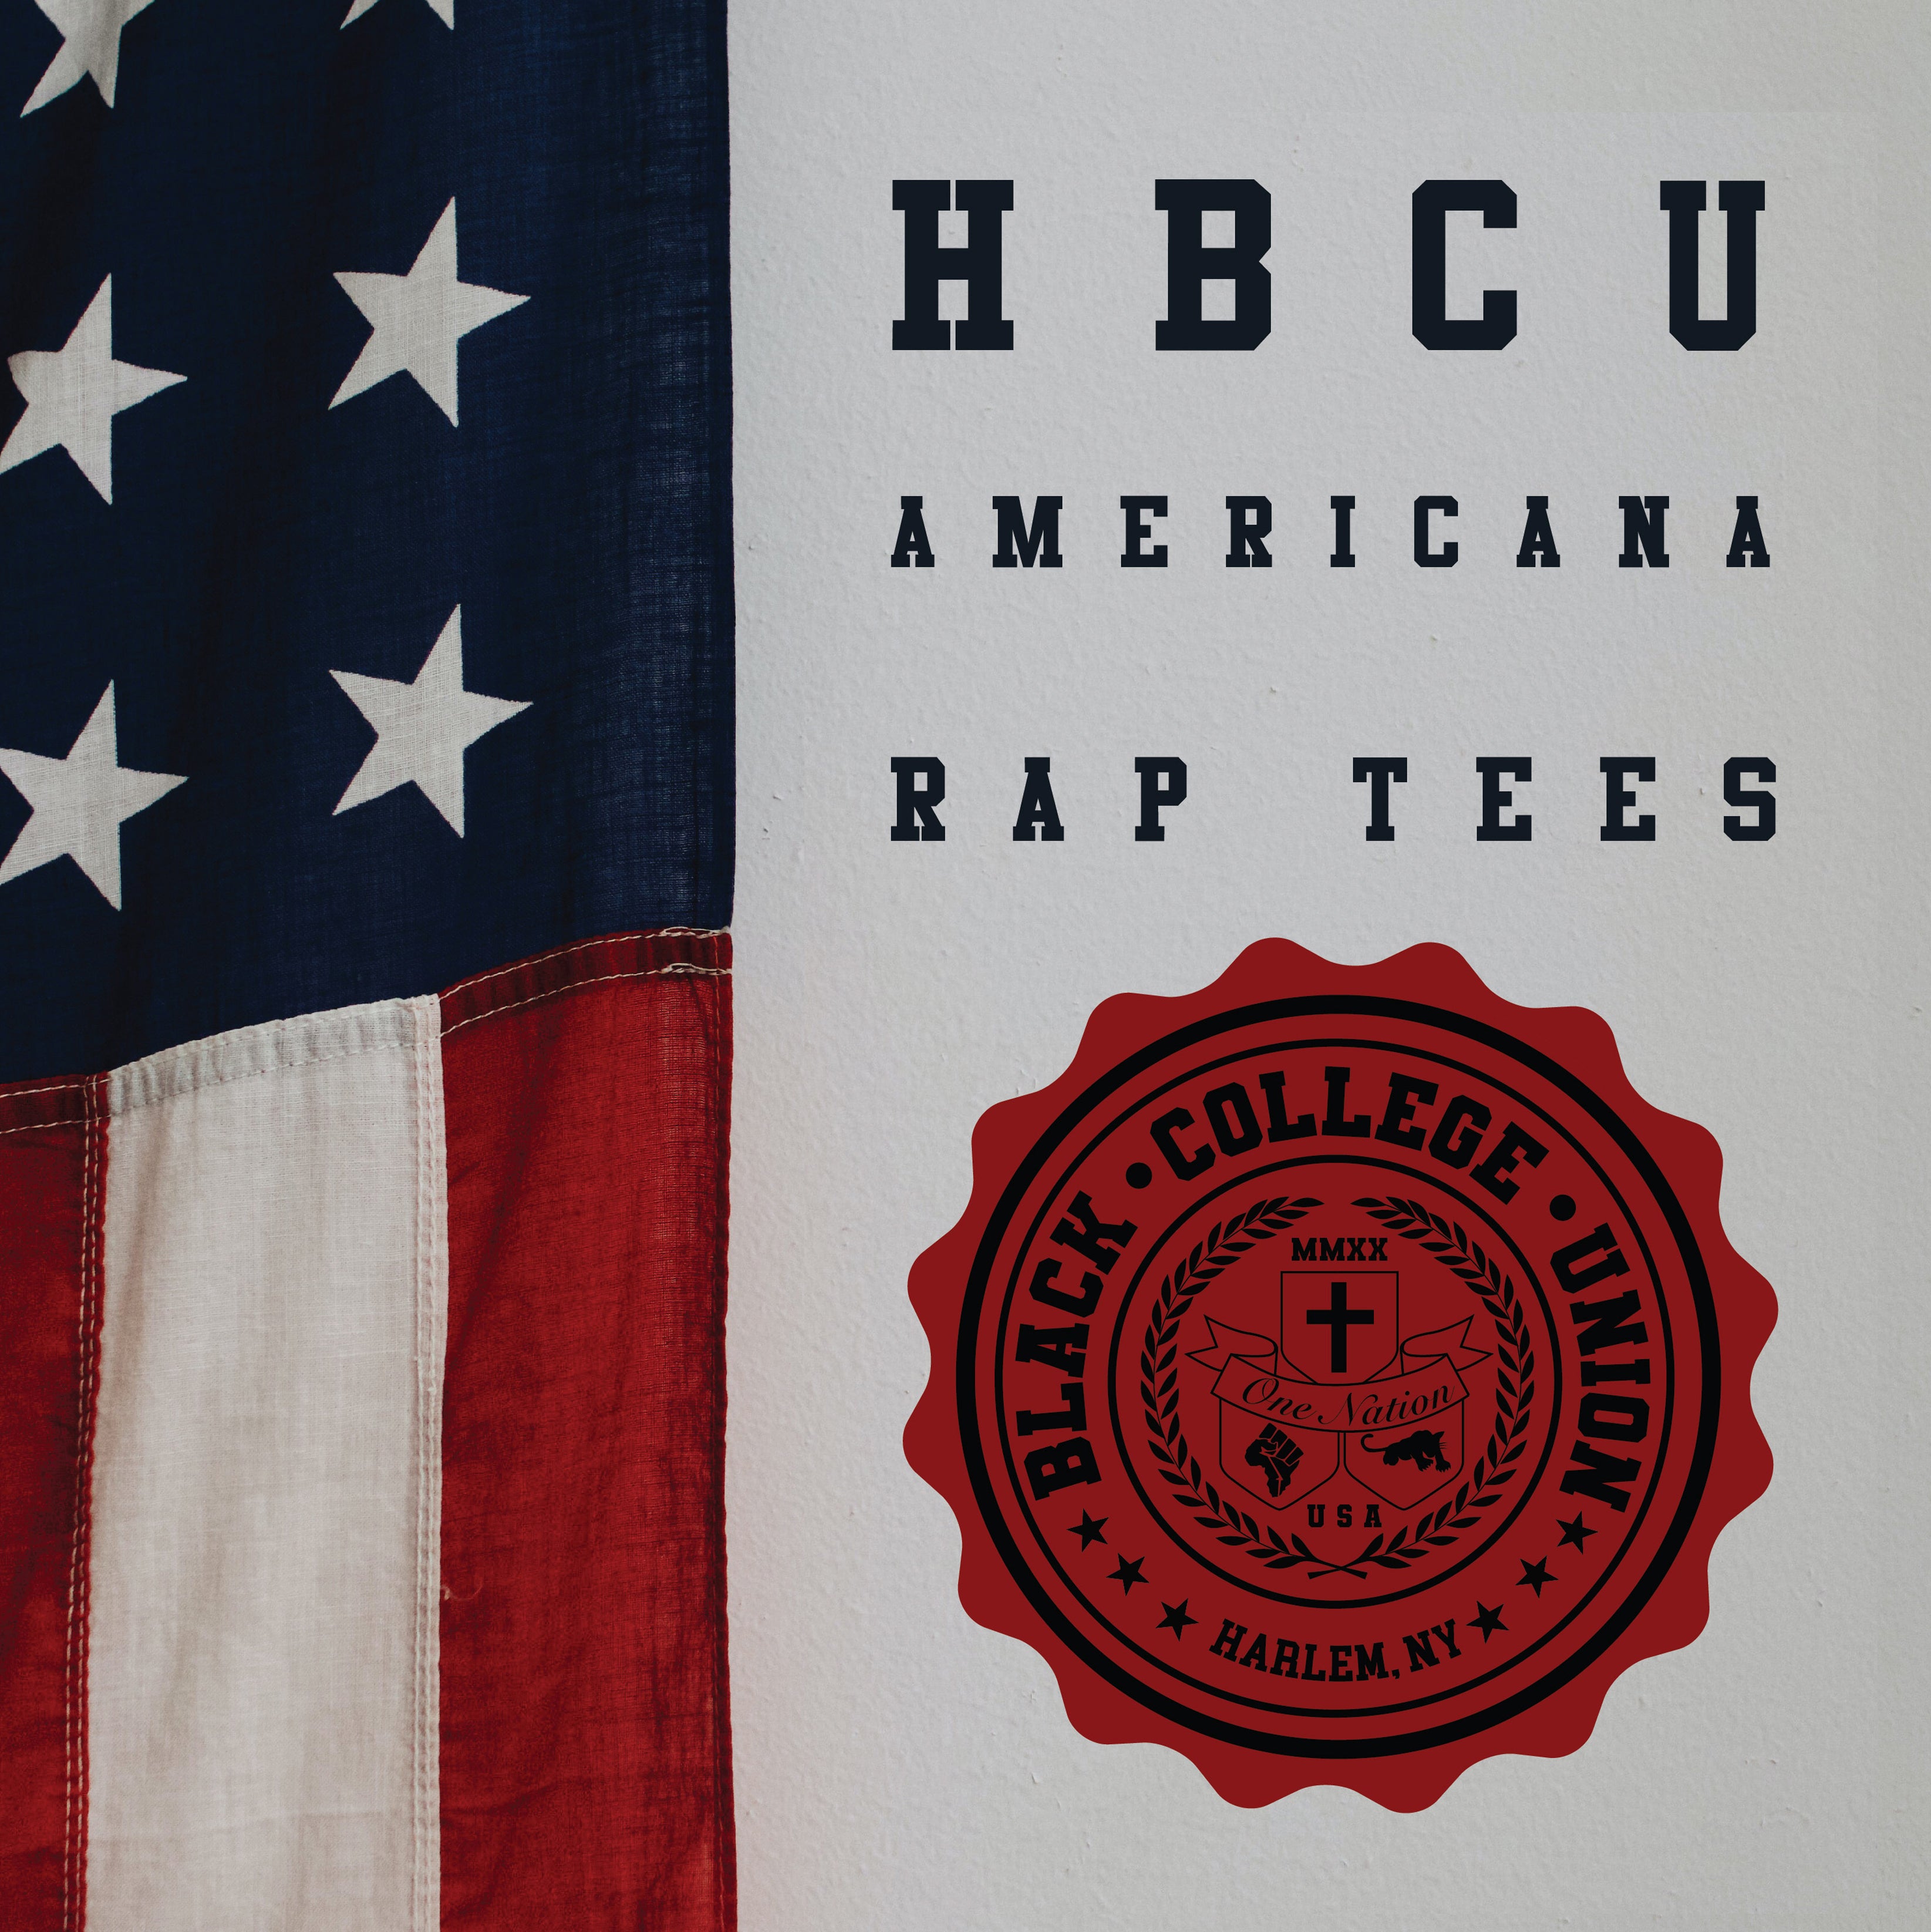 BCU X Champion Original HBCU Americana Rap Tee - Alcorn State